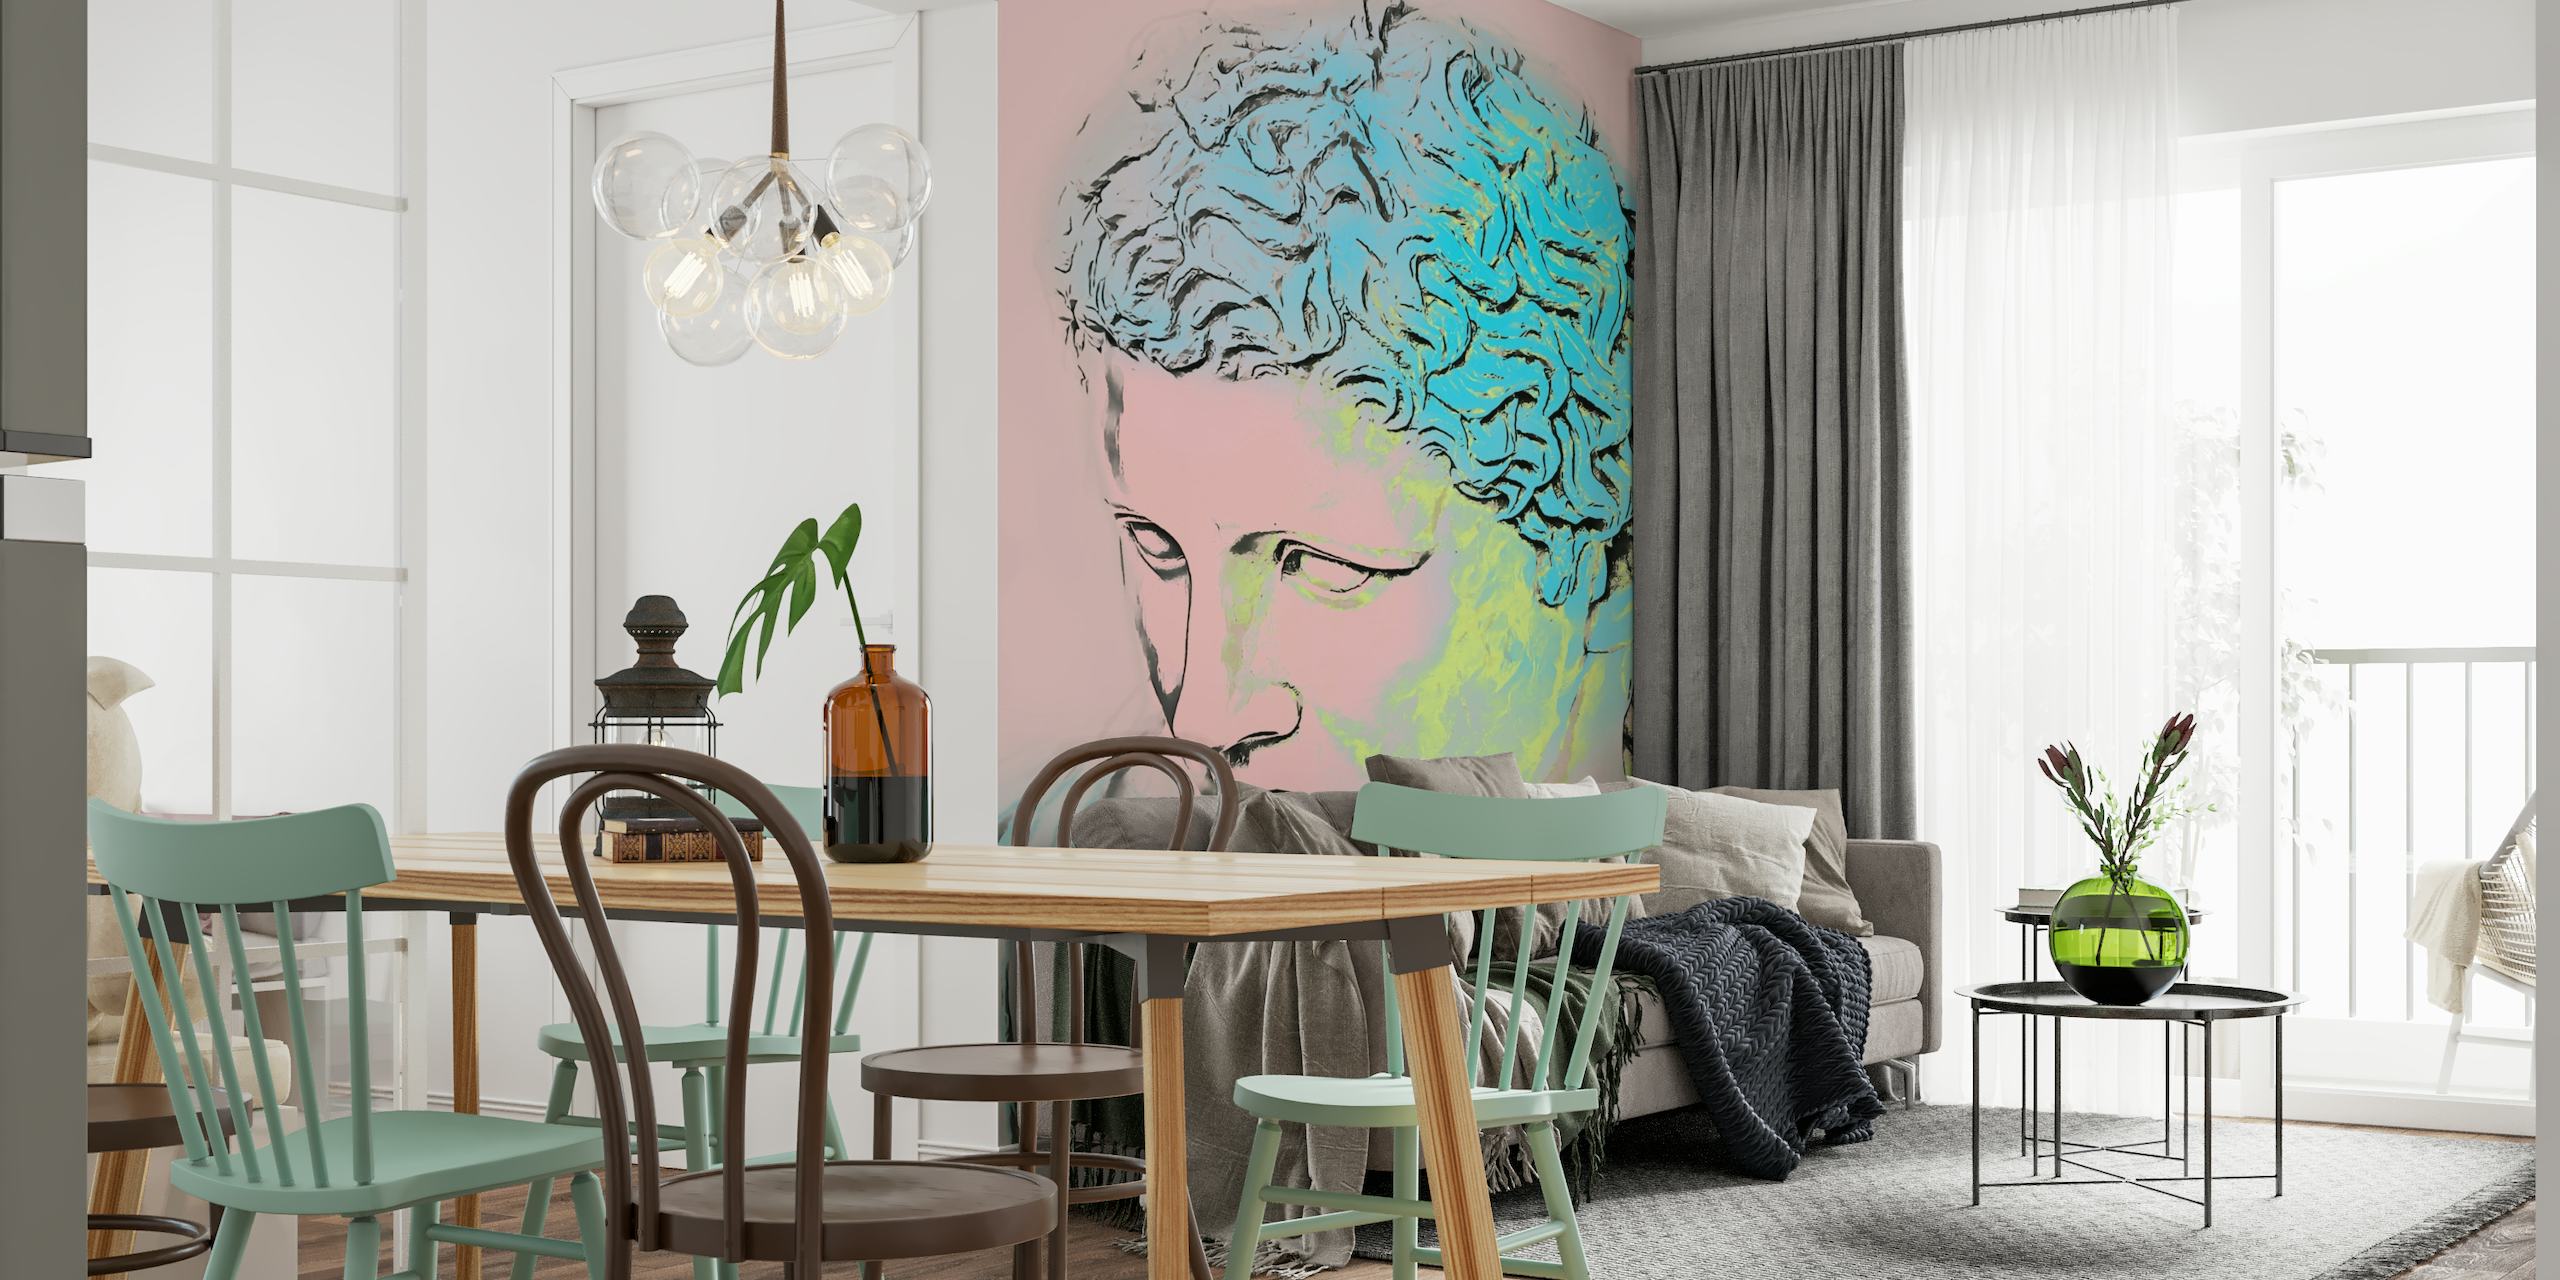 Stilisert neo art deco-portrett med veggmaleri i neonfargepalett